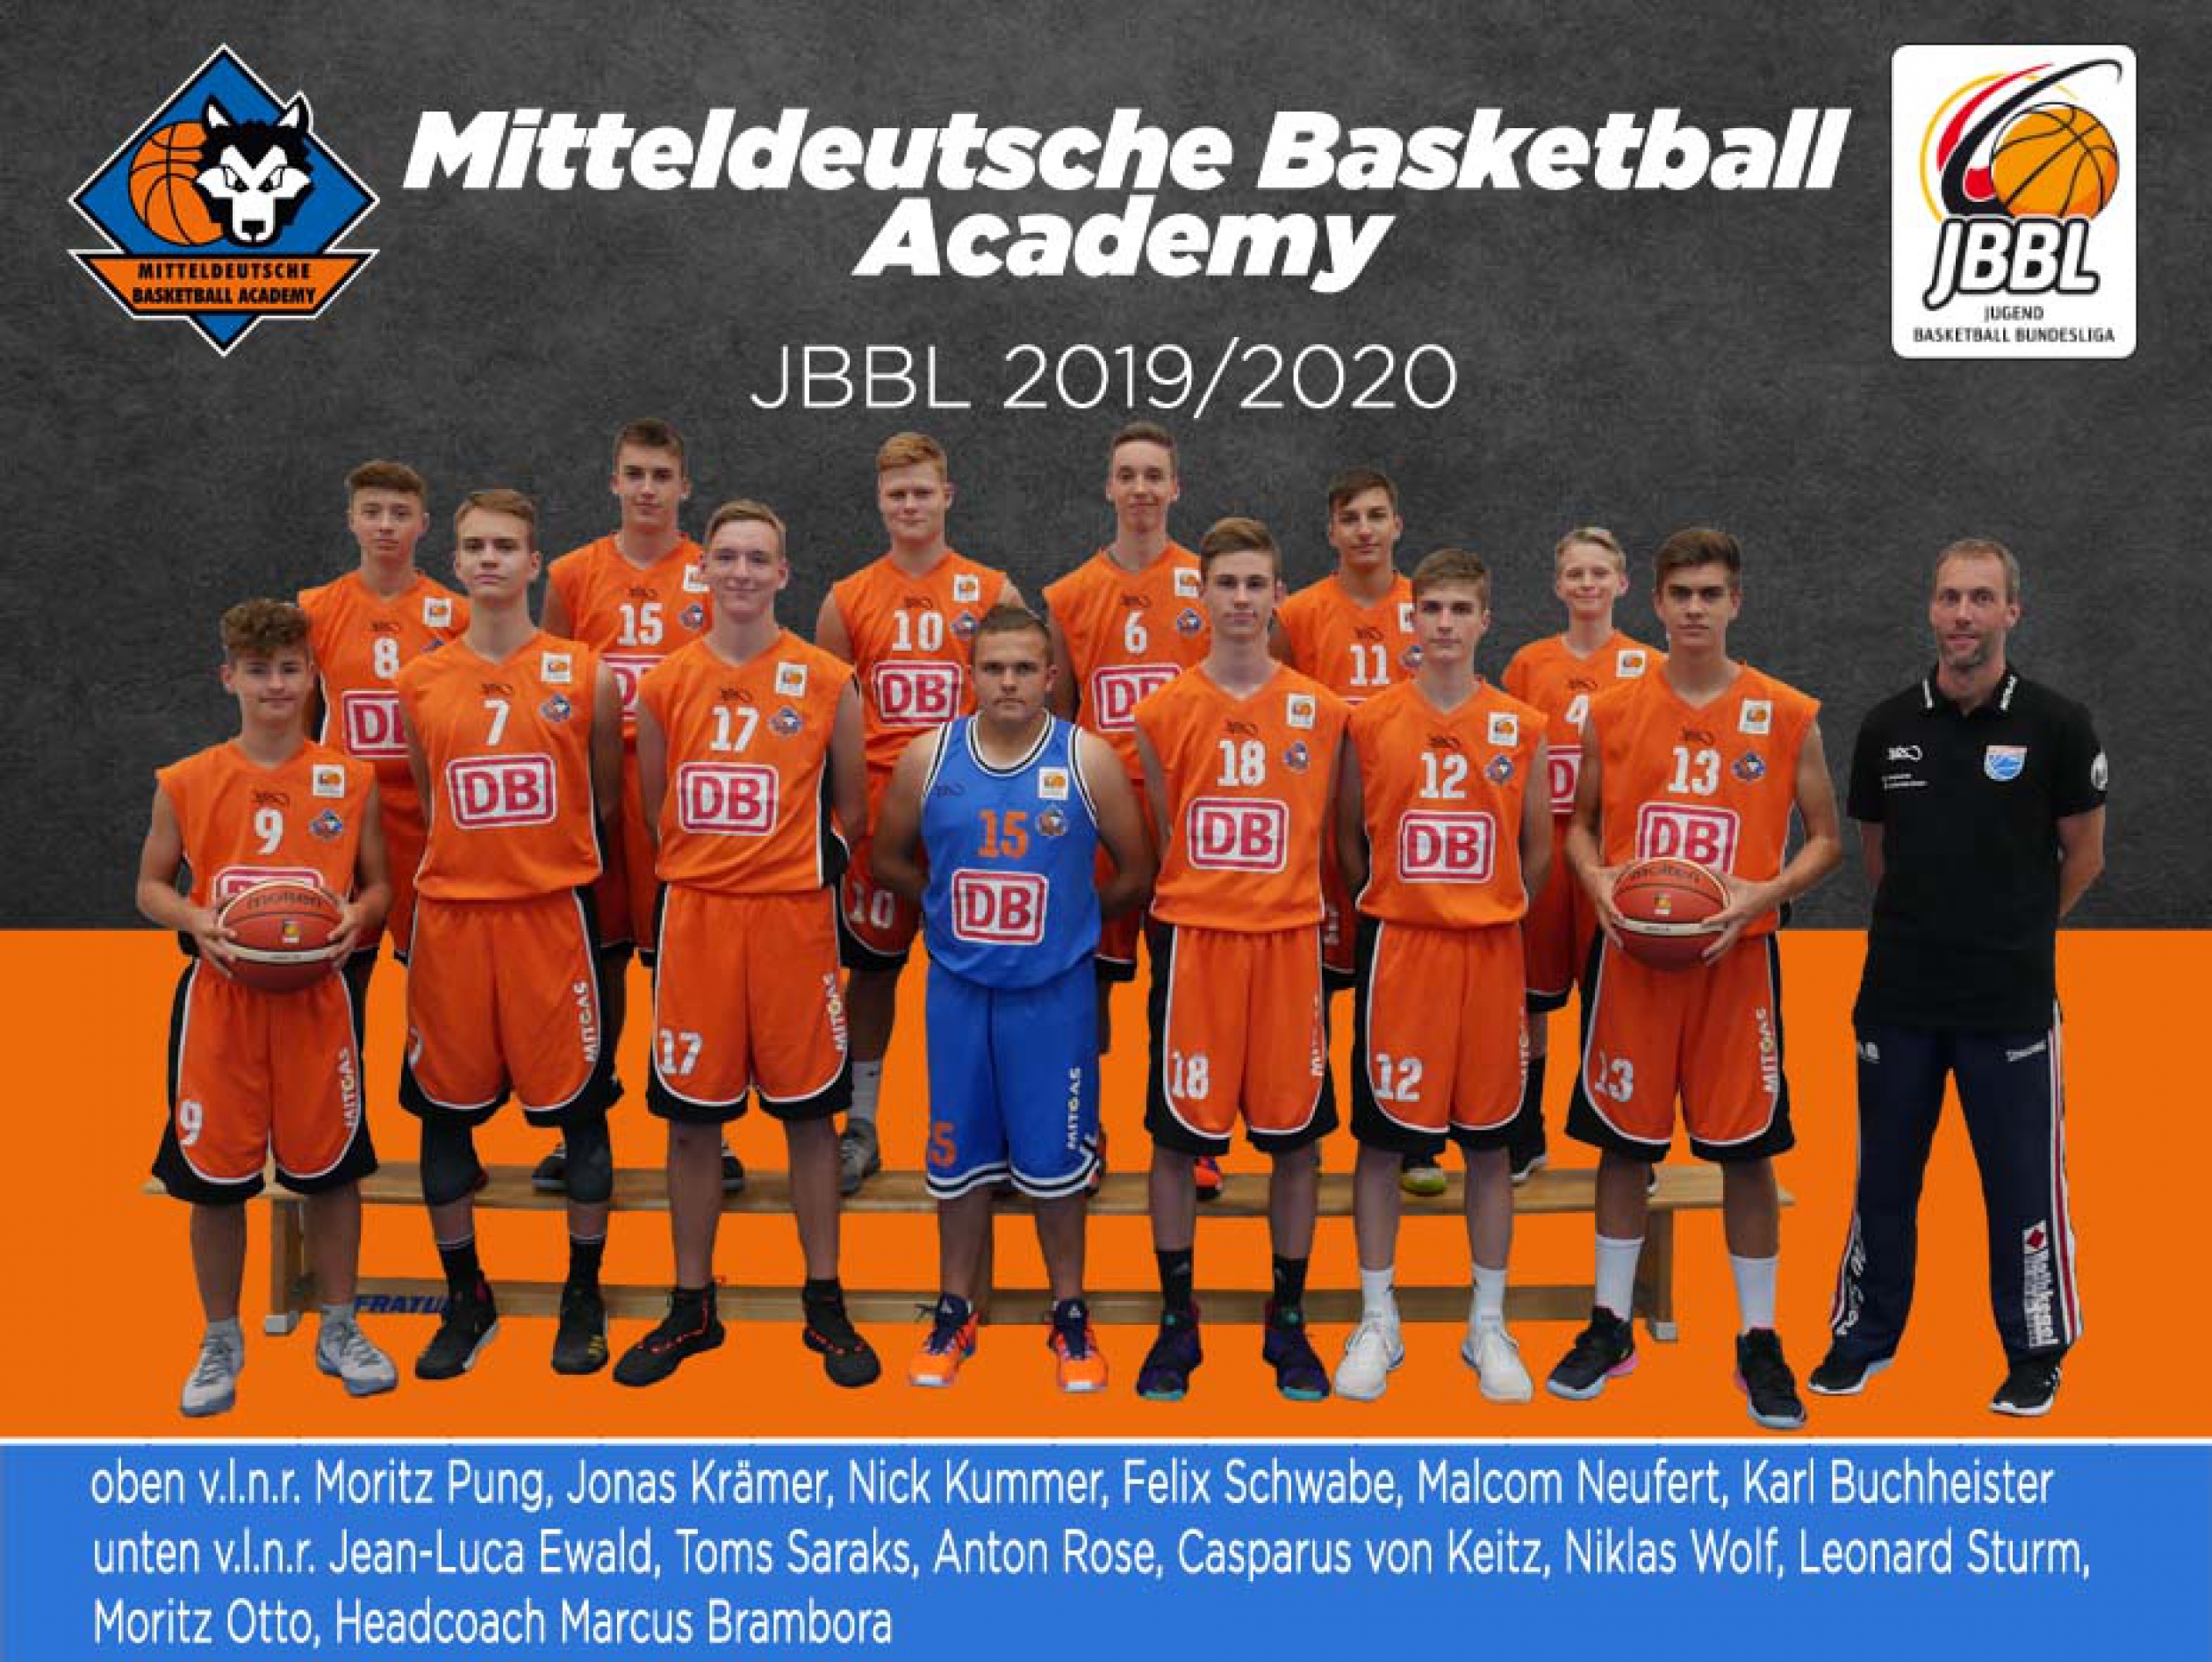 Mannschaftsfoto Mitteldeutsche Basketball Academy